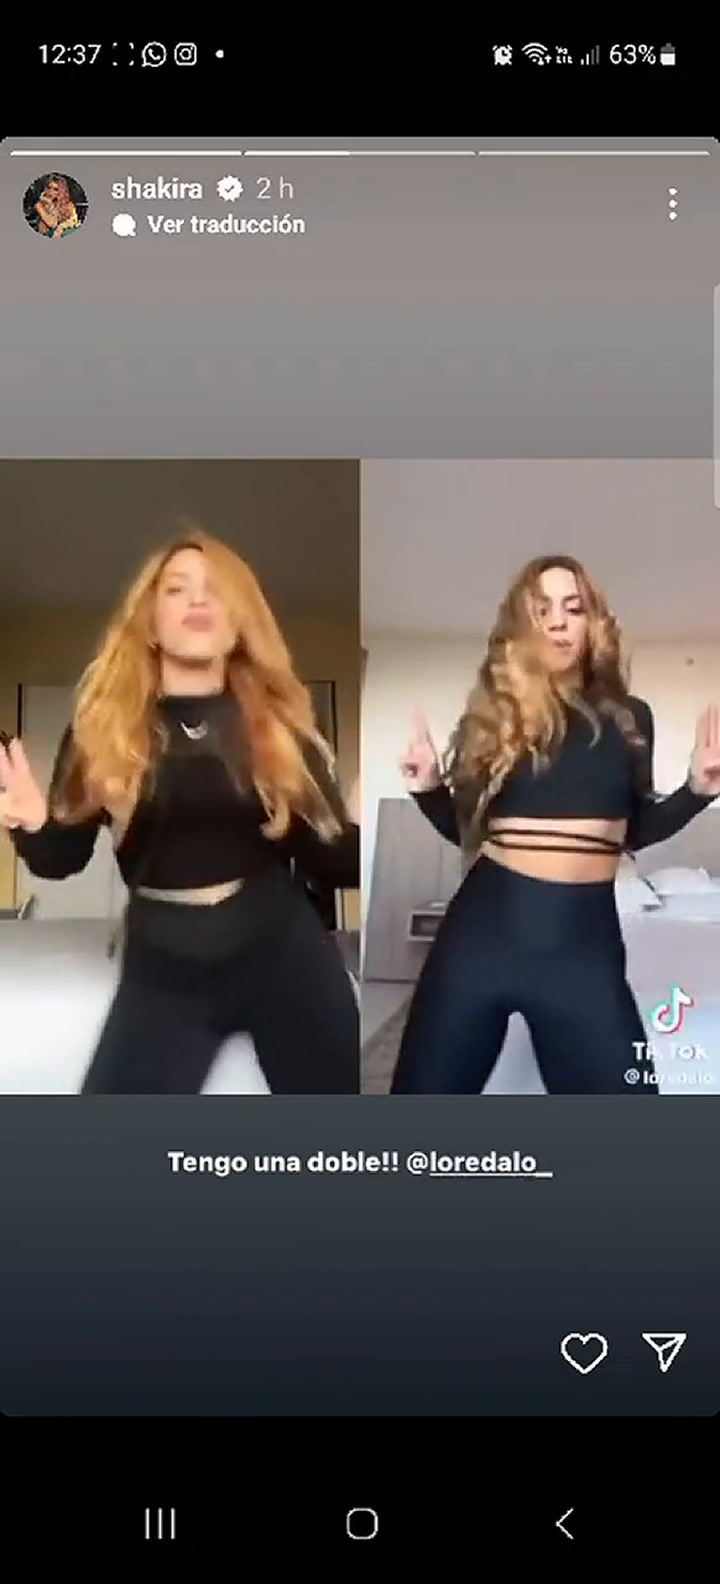 Shakira publicó un video de una mujer que parece su doble